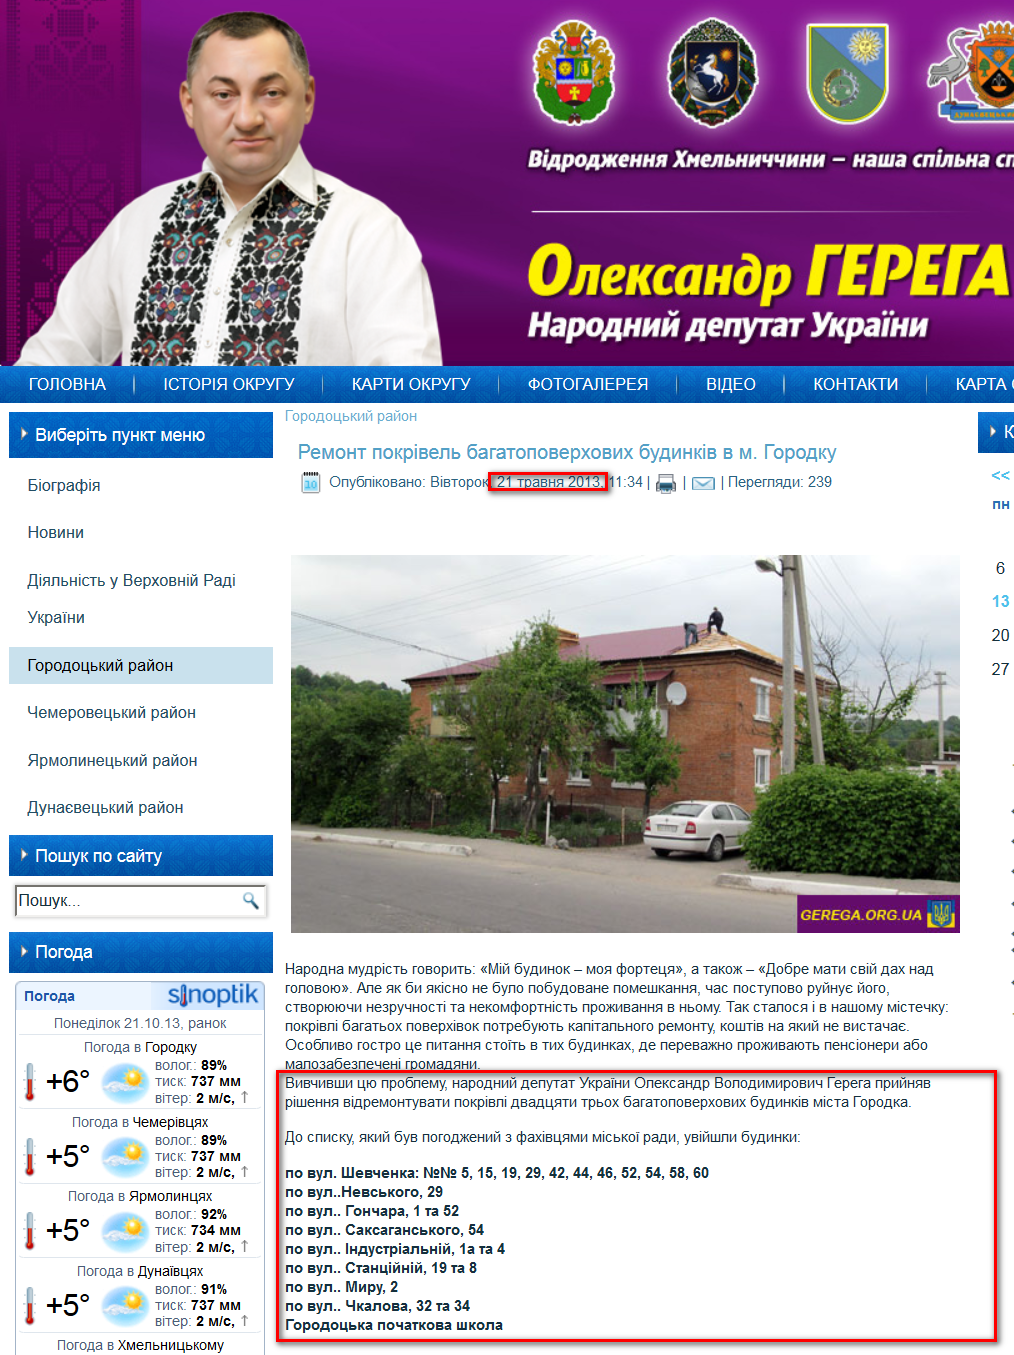 http://gerega.org.ua/index.php/horodotskyi-raion/67-remont-pokrivel-bahatopoverkhovykh-budynkiv-v-m-horodku